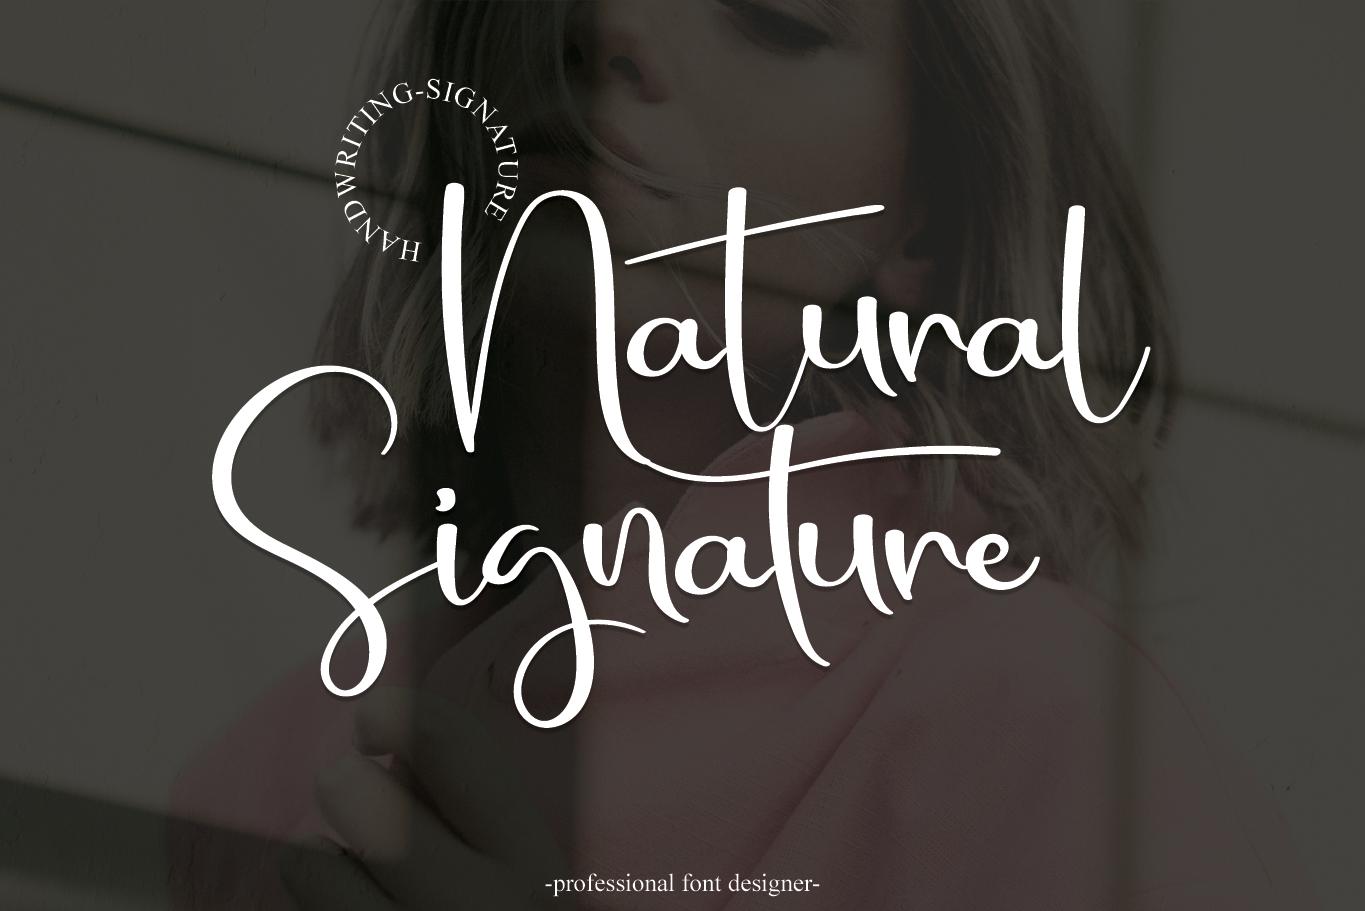 Natural Signature Font